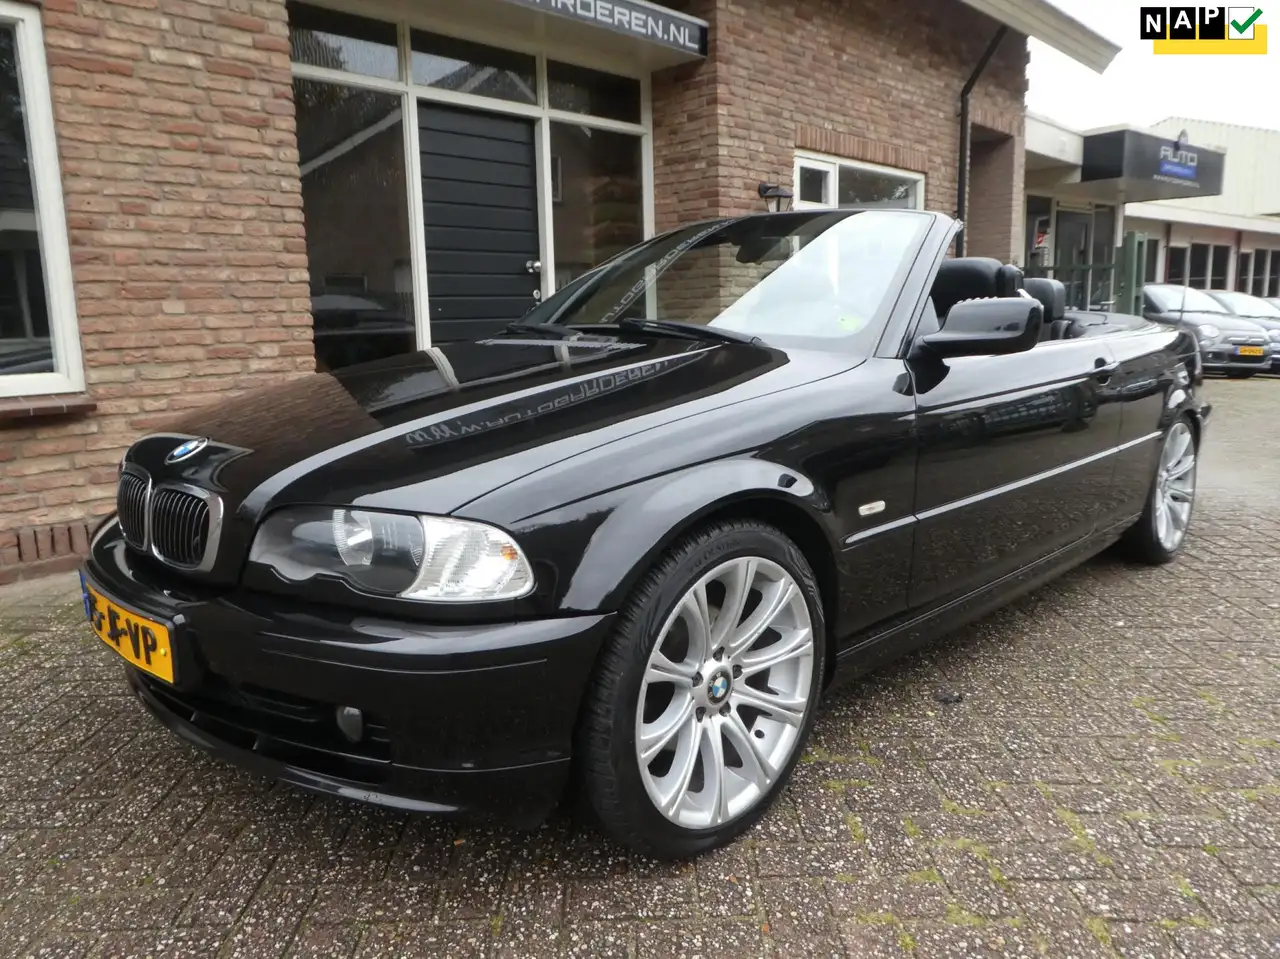 BMW 318 Cabriolet in Zwart tweedehands in GARDEREN voor € 7.950,-